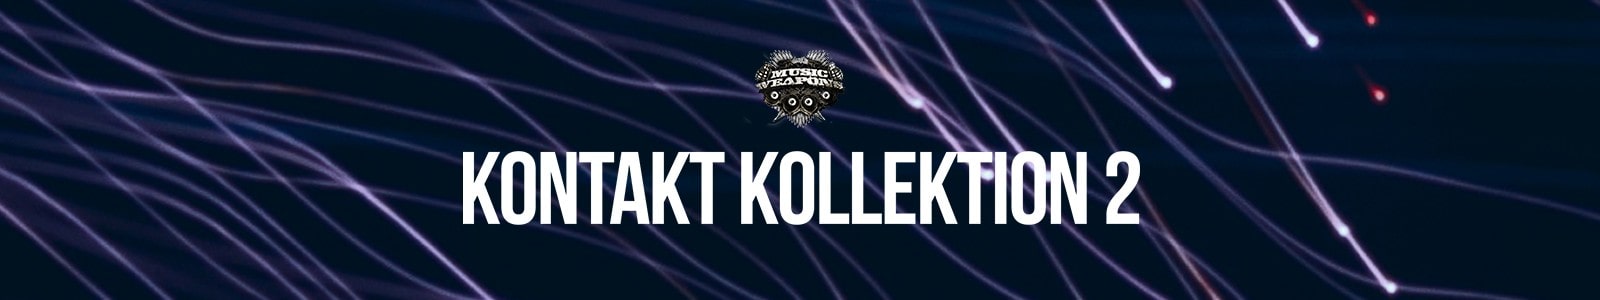 Kontakt Kollektion 2 by Modern Producers